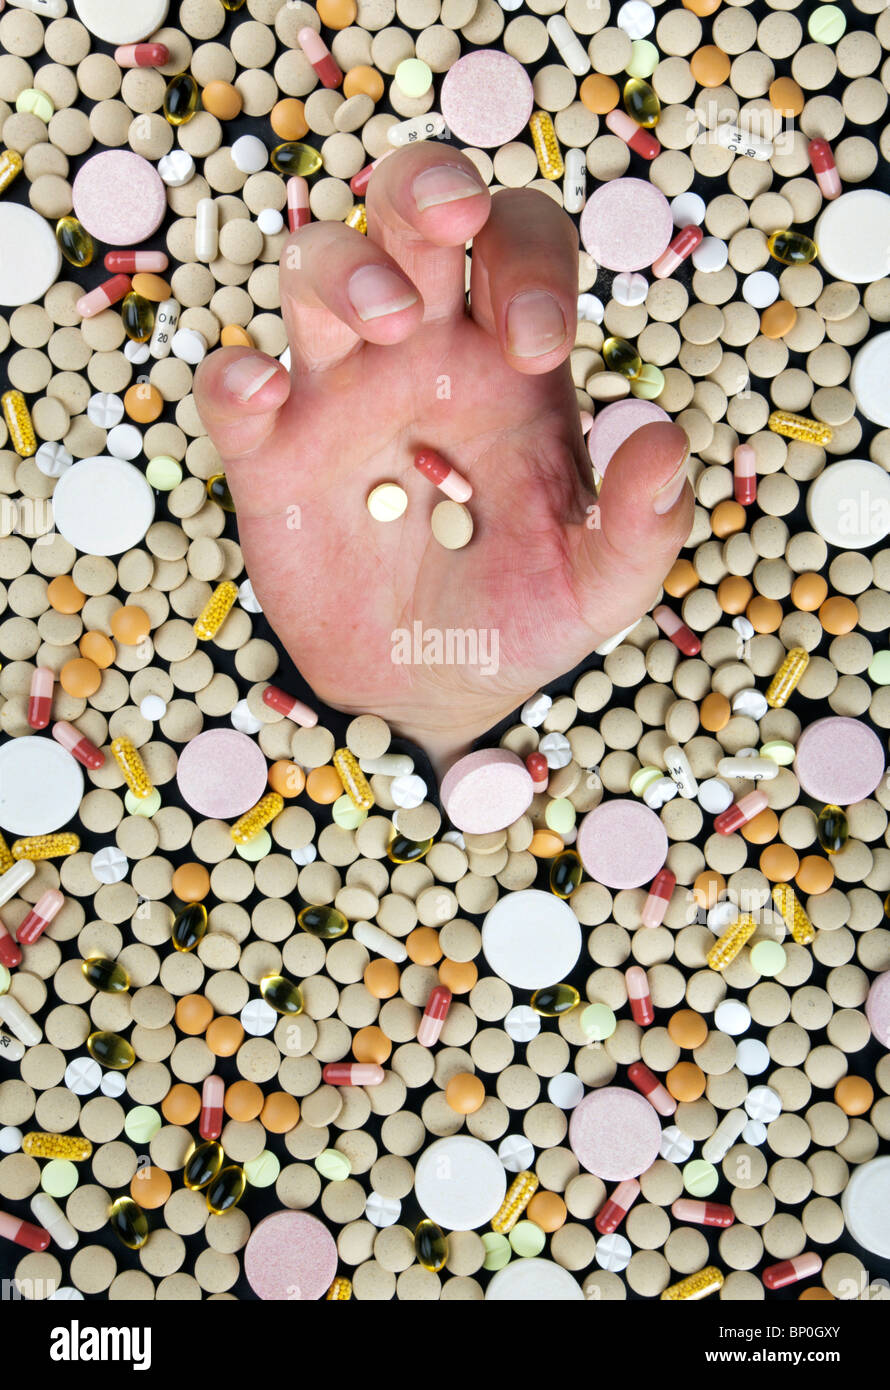 Affogare in un mare di medicina - mano protesa tra centinaia di pillole Foto Stock